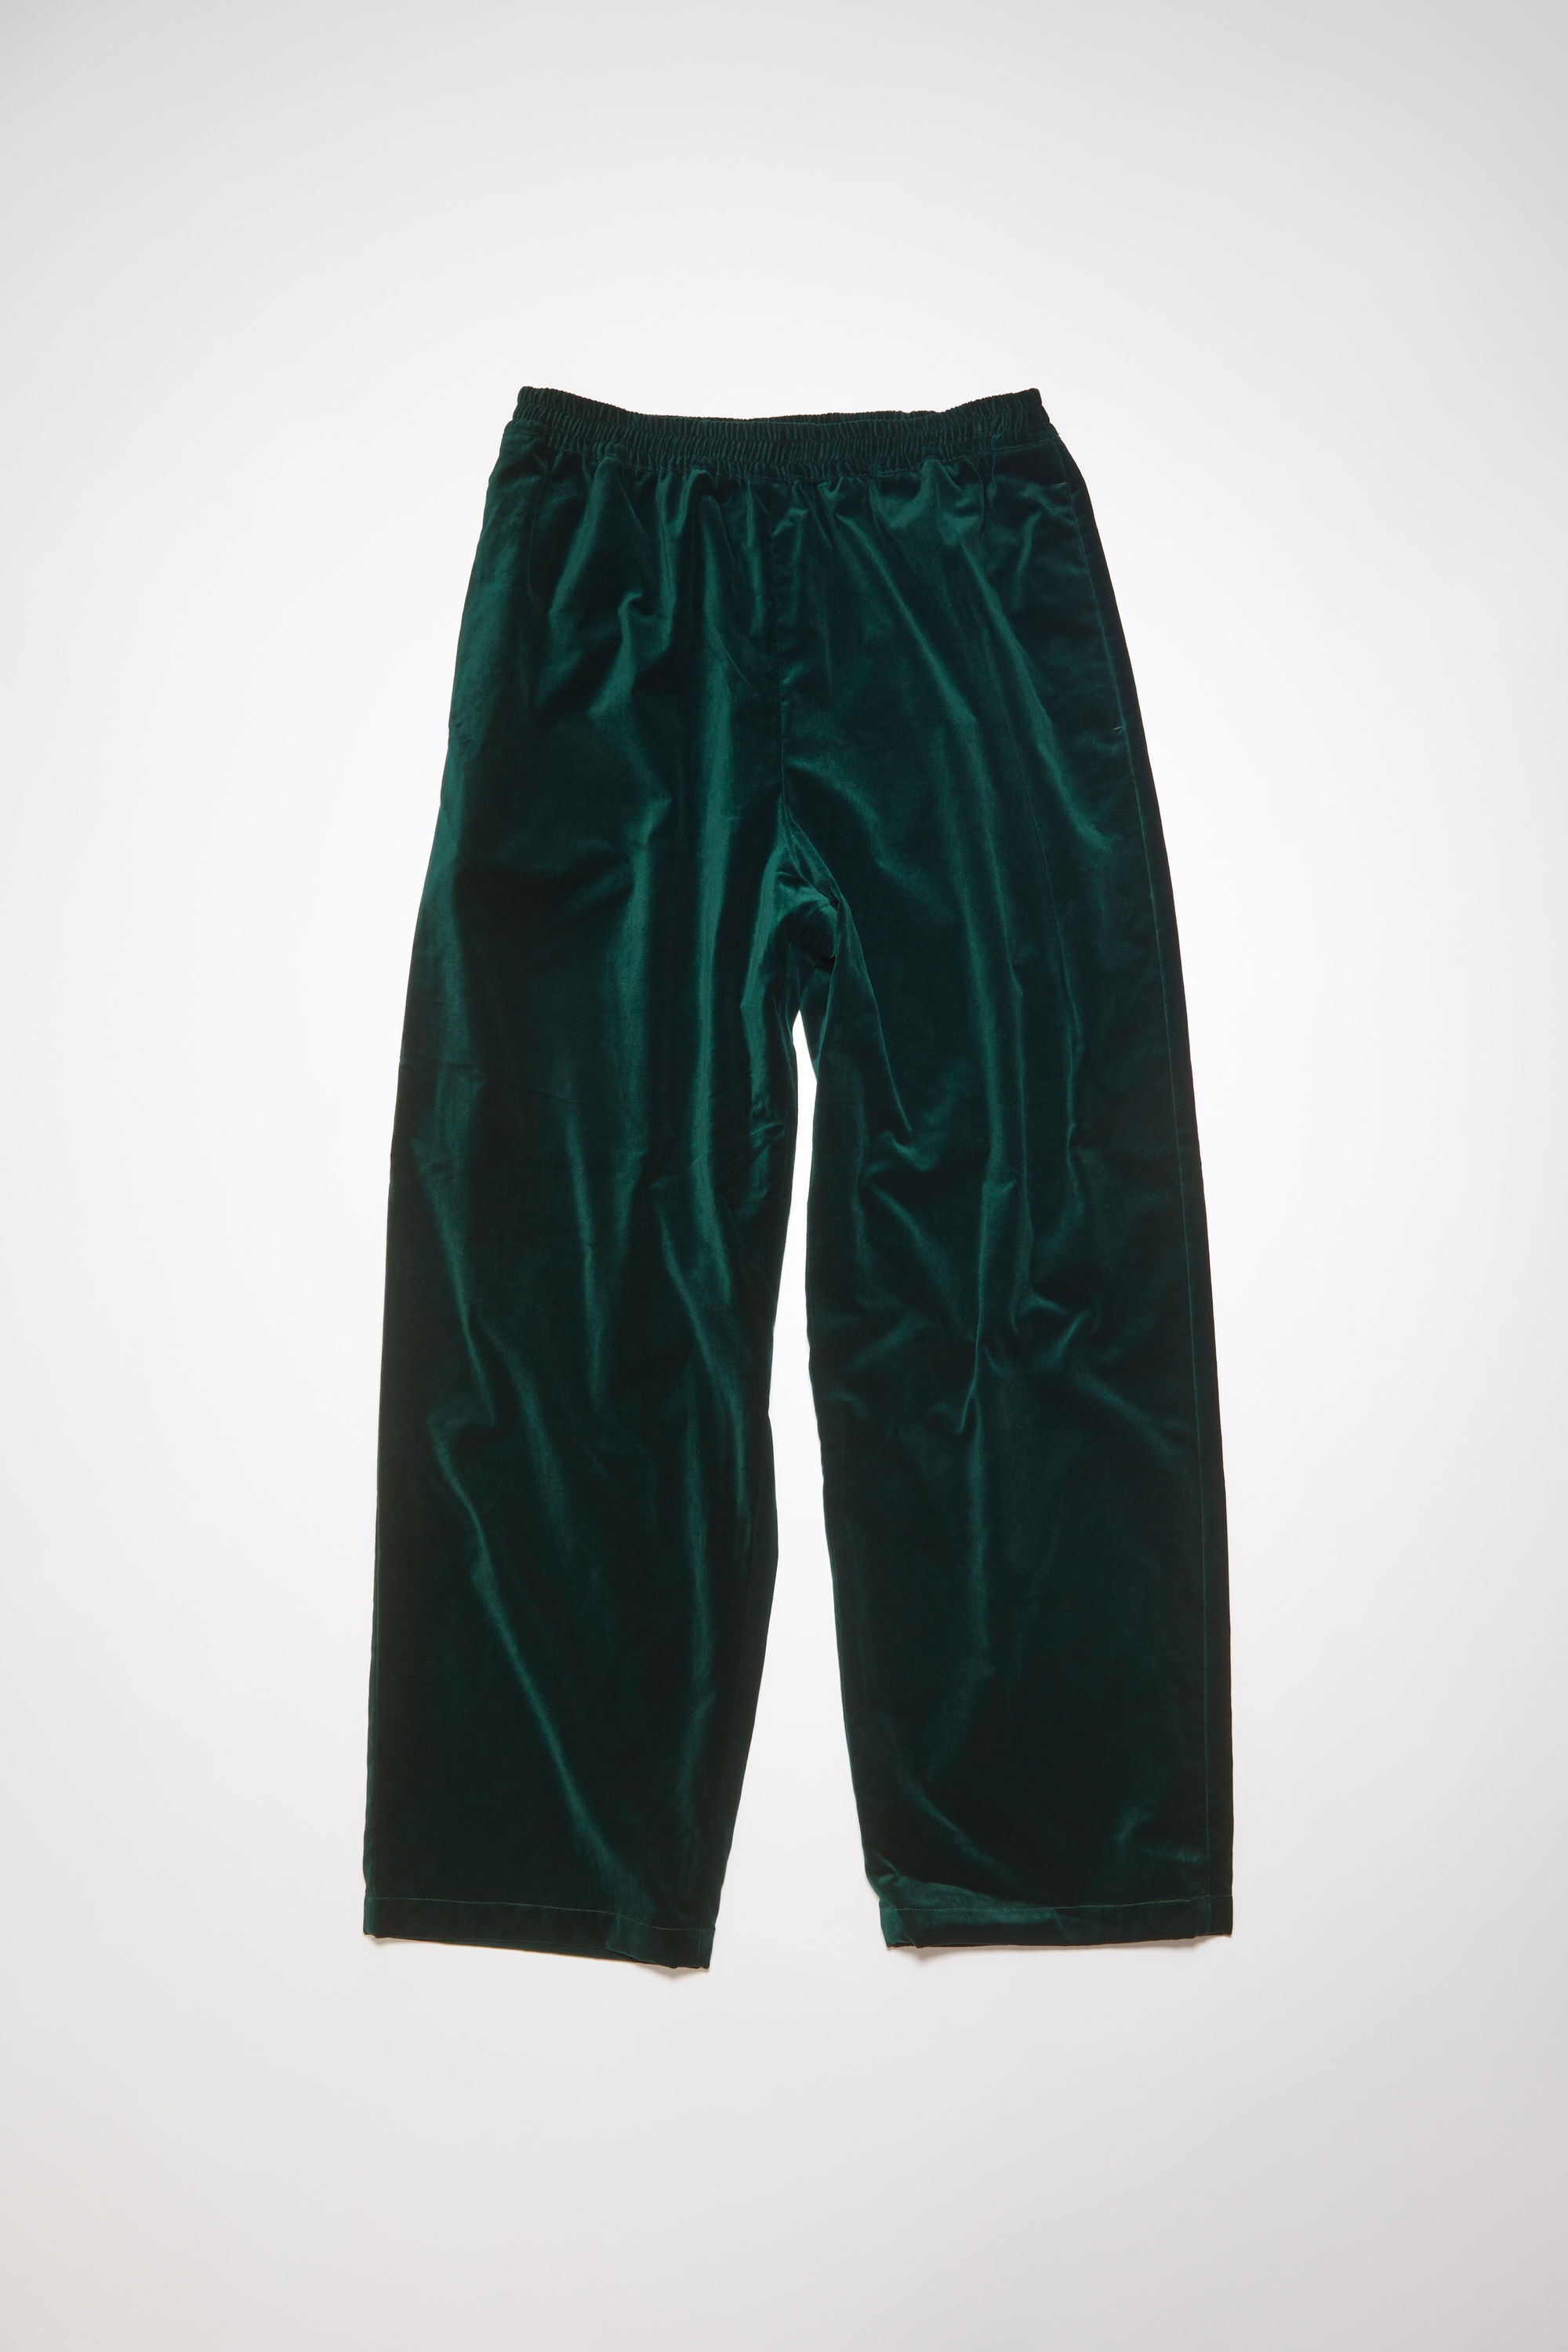 Acne Studios Velvet trousers - Dark green